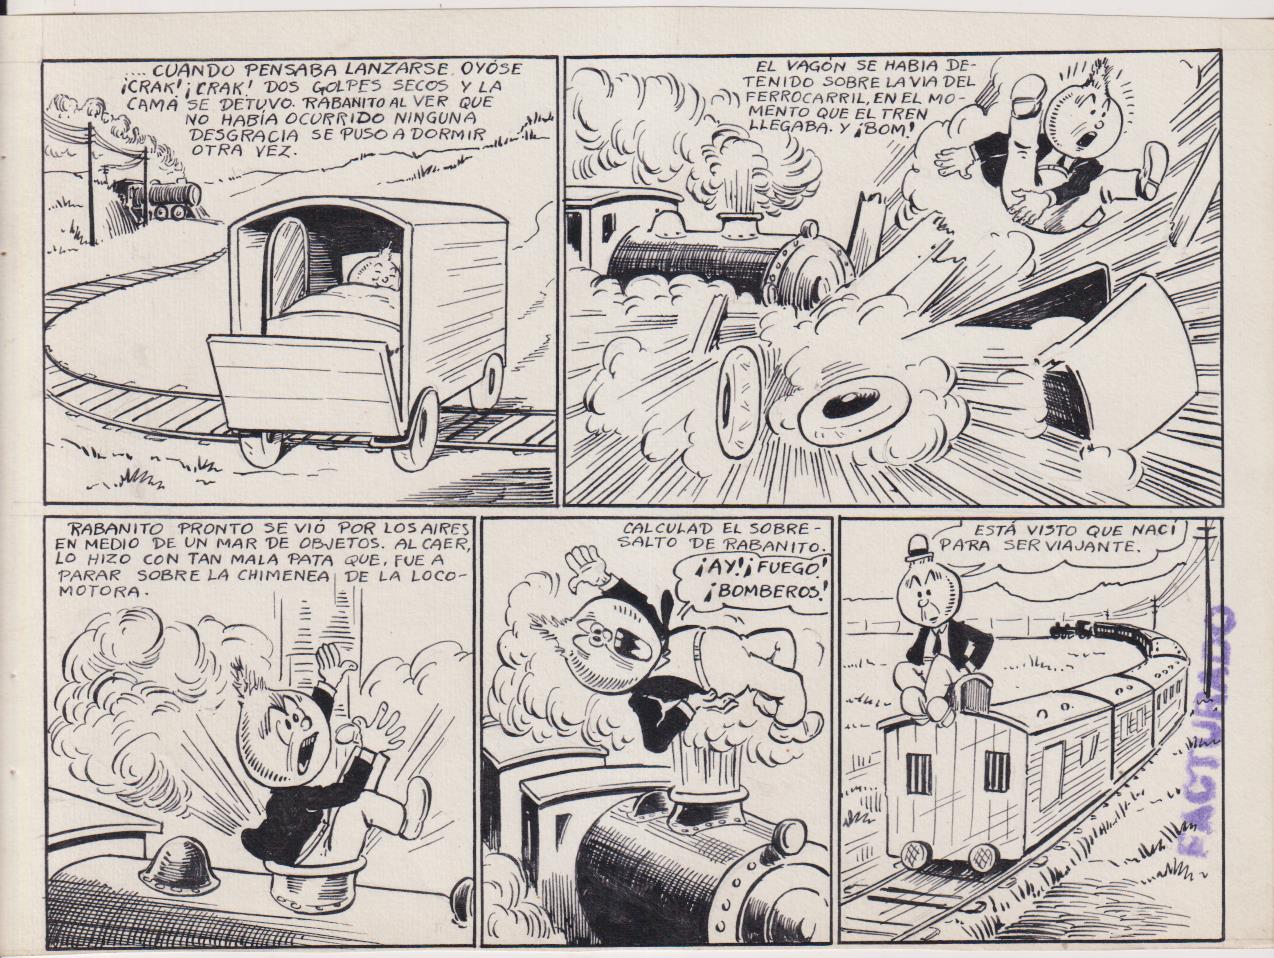 Rabanito y Cebollita. El Rajah. Dibujos Originales. (16,5x22) 9 páginas + color. Noviembre 1942